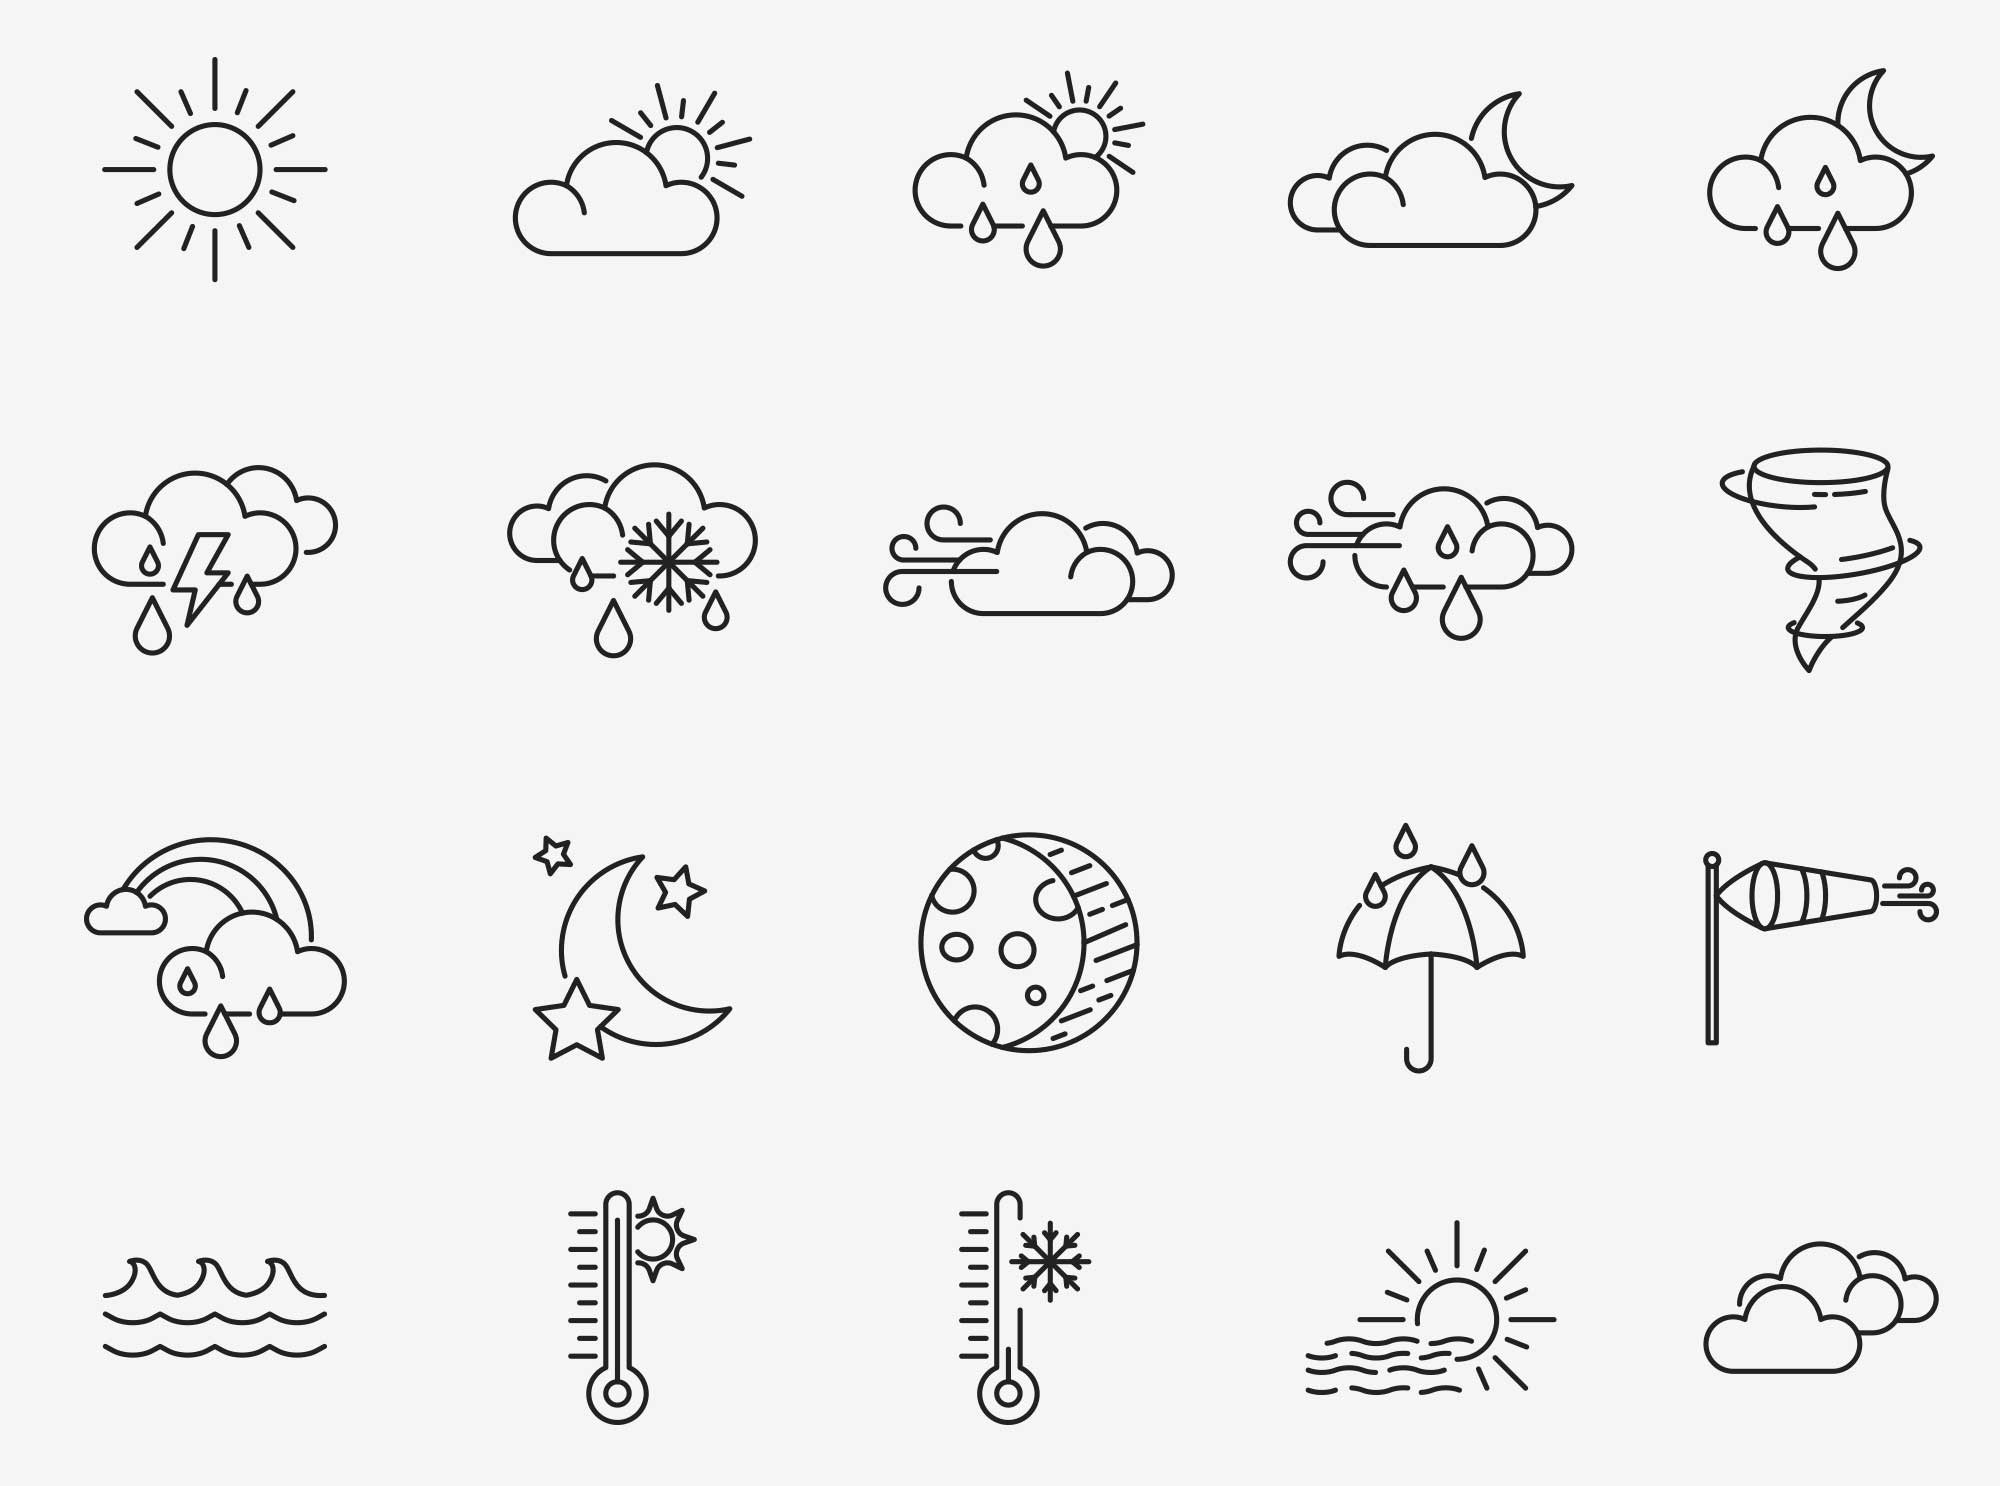 80个天气矢量图标 80 Weather Vector Icons 图标素材 第4张